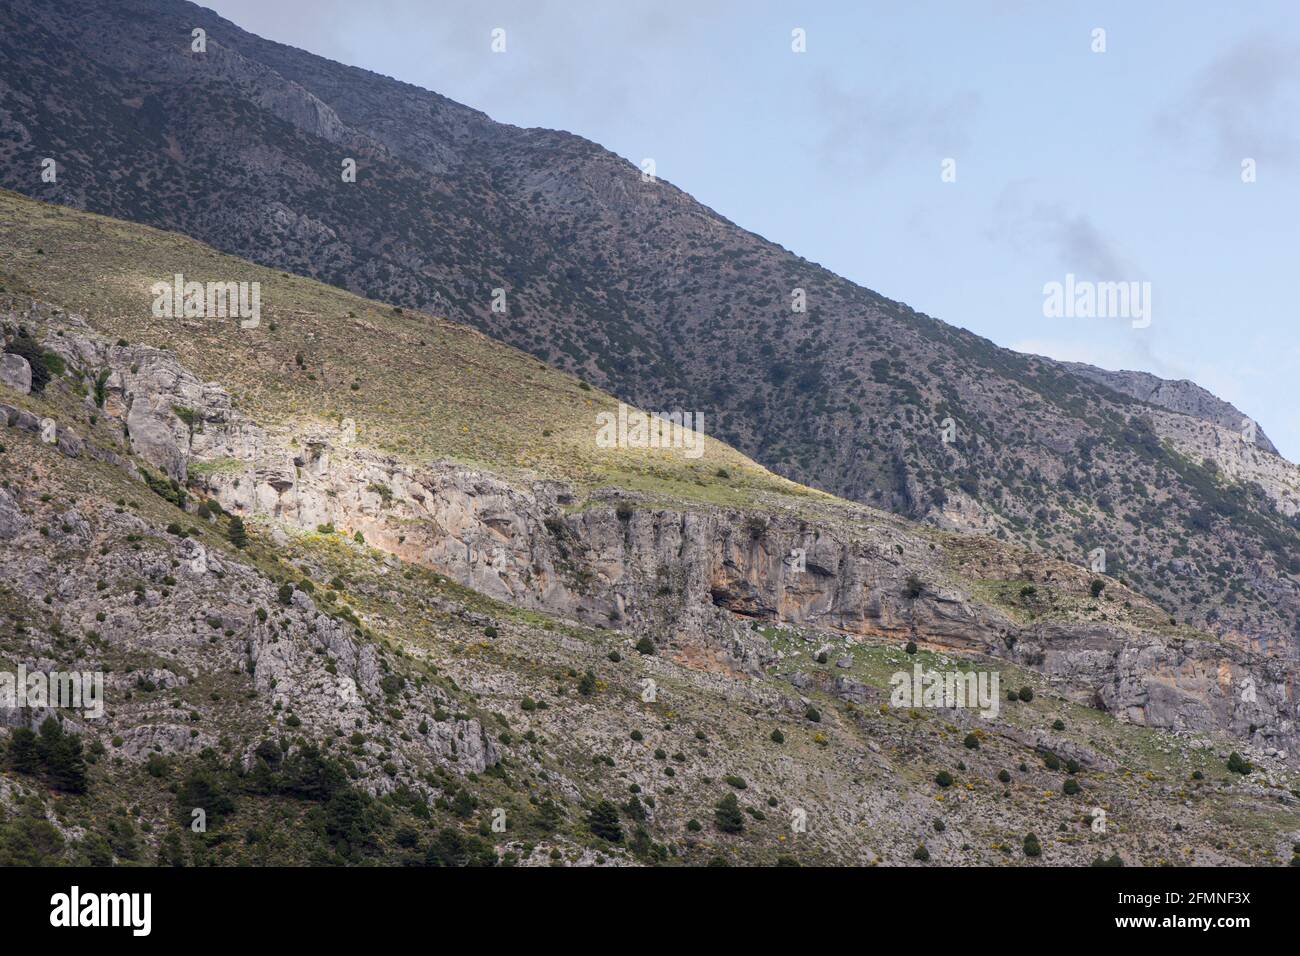 Sierra de las Nieves, catena montuosa nella provincia di Malaga, Spagna  Foto stock - Alamy